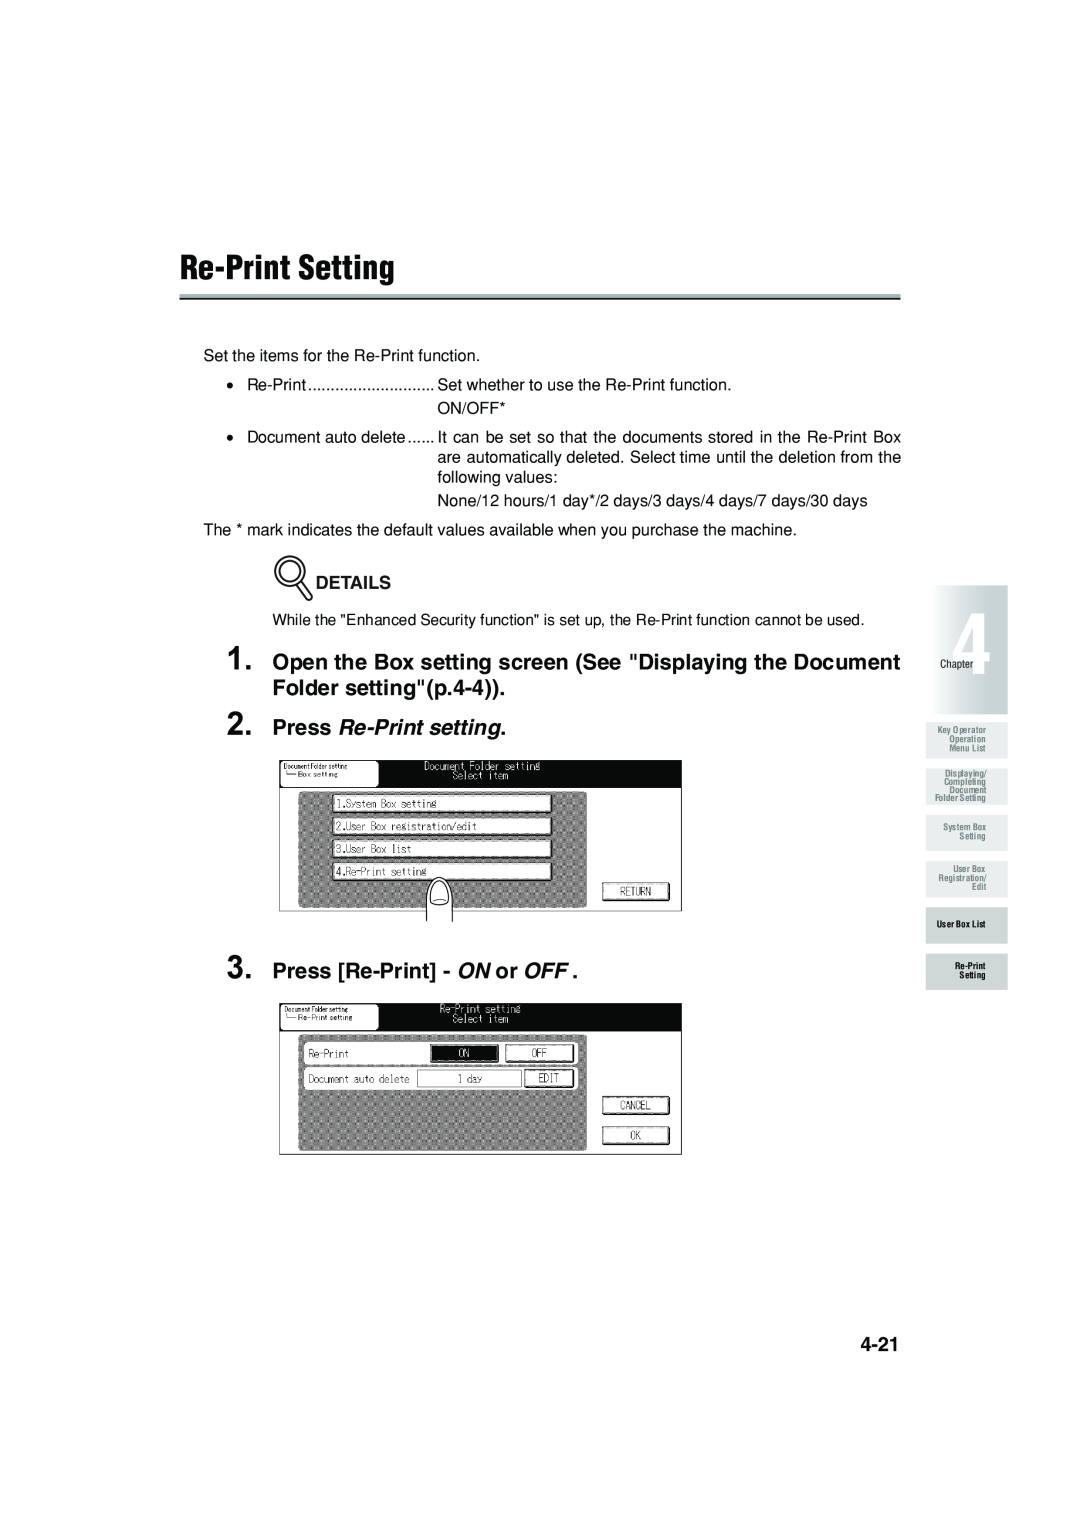 Konica Minolta 7222 manual Re-Print Setting, Press Re-Print setting, Press Re-Print - ON or OFF, Details 